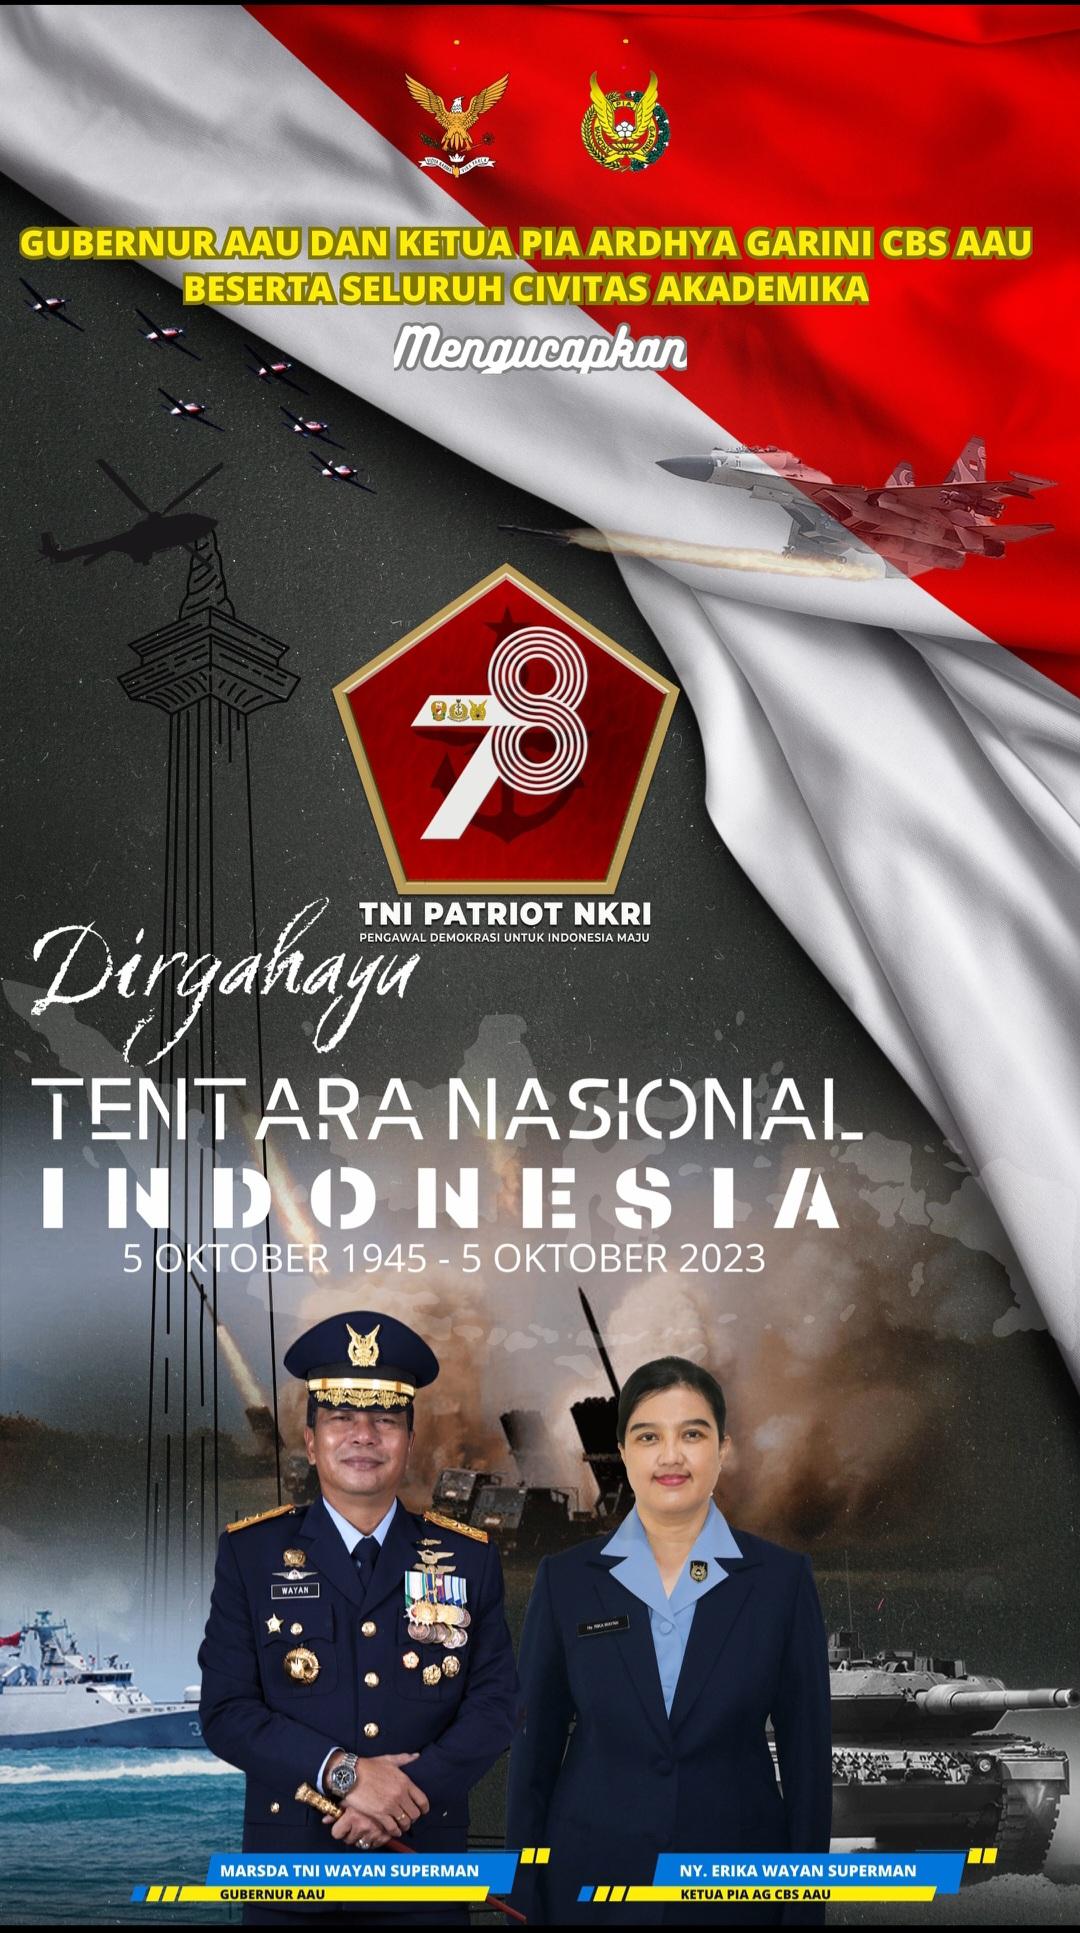 DIRGAHAYU TENTARA NASIONAL INDONESIA